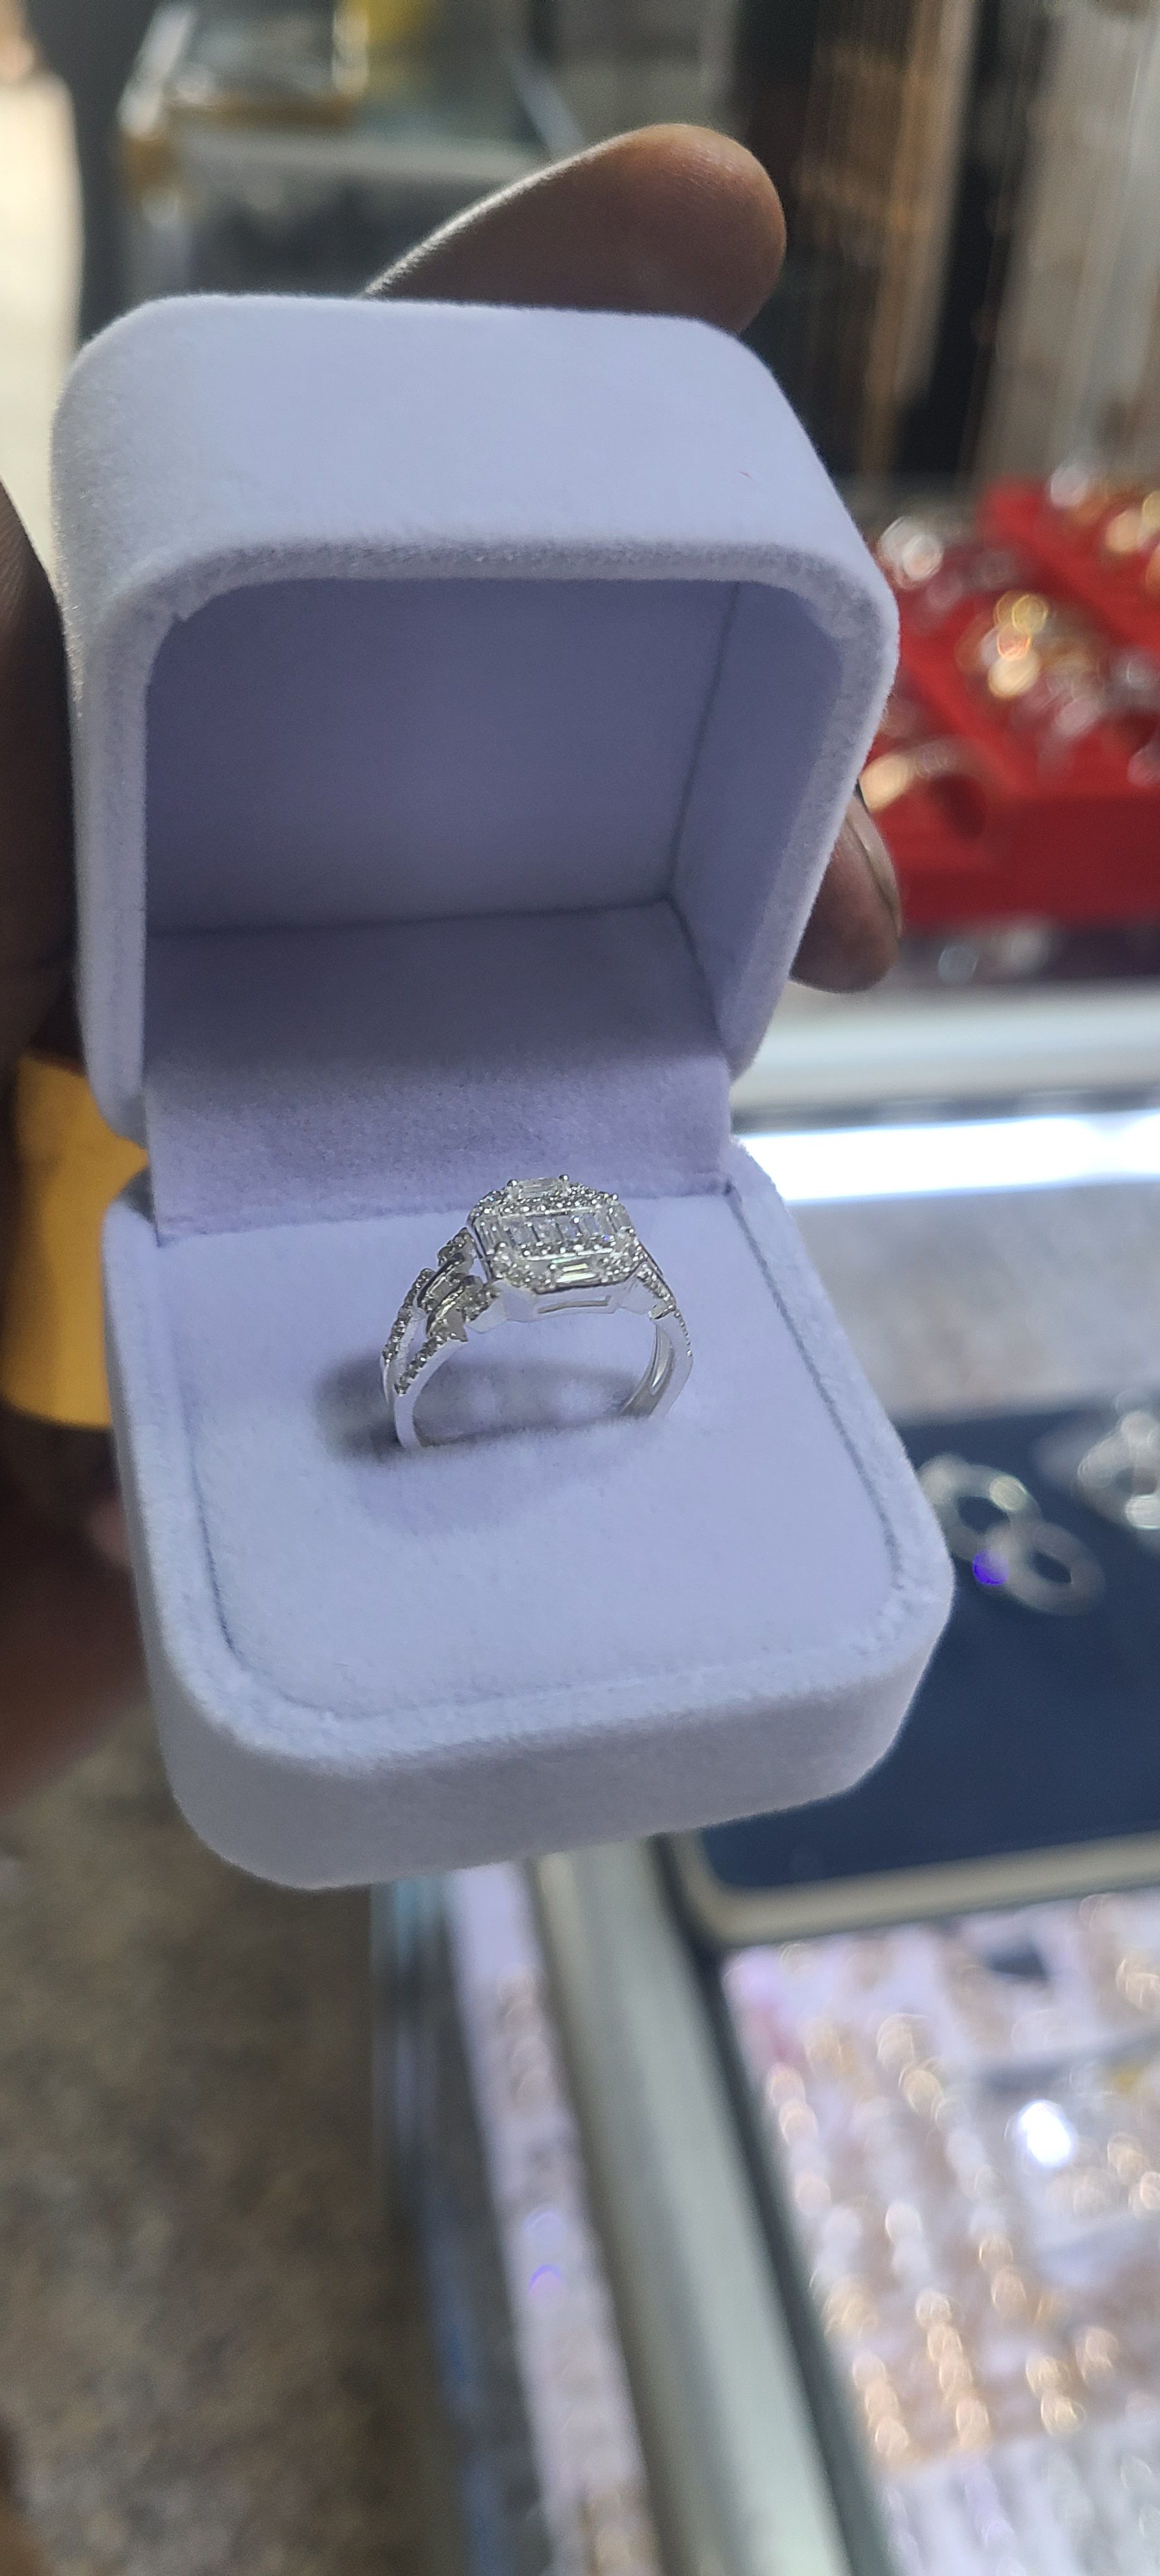 Original silver engagement rings